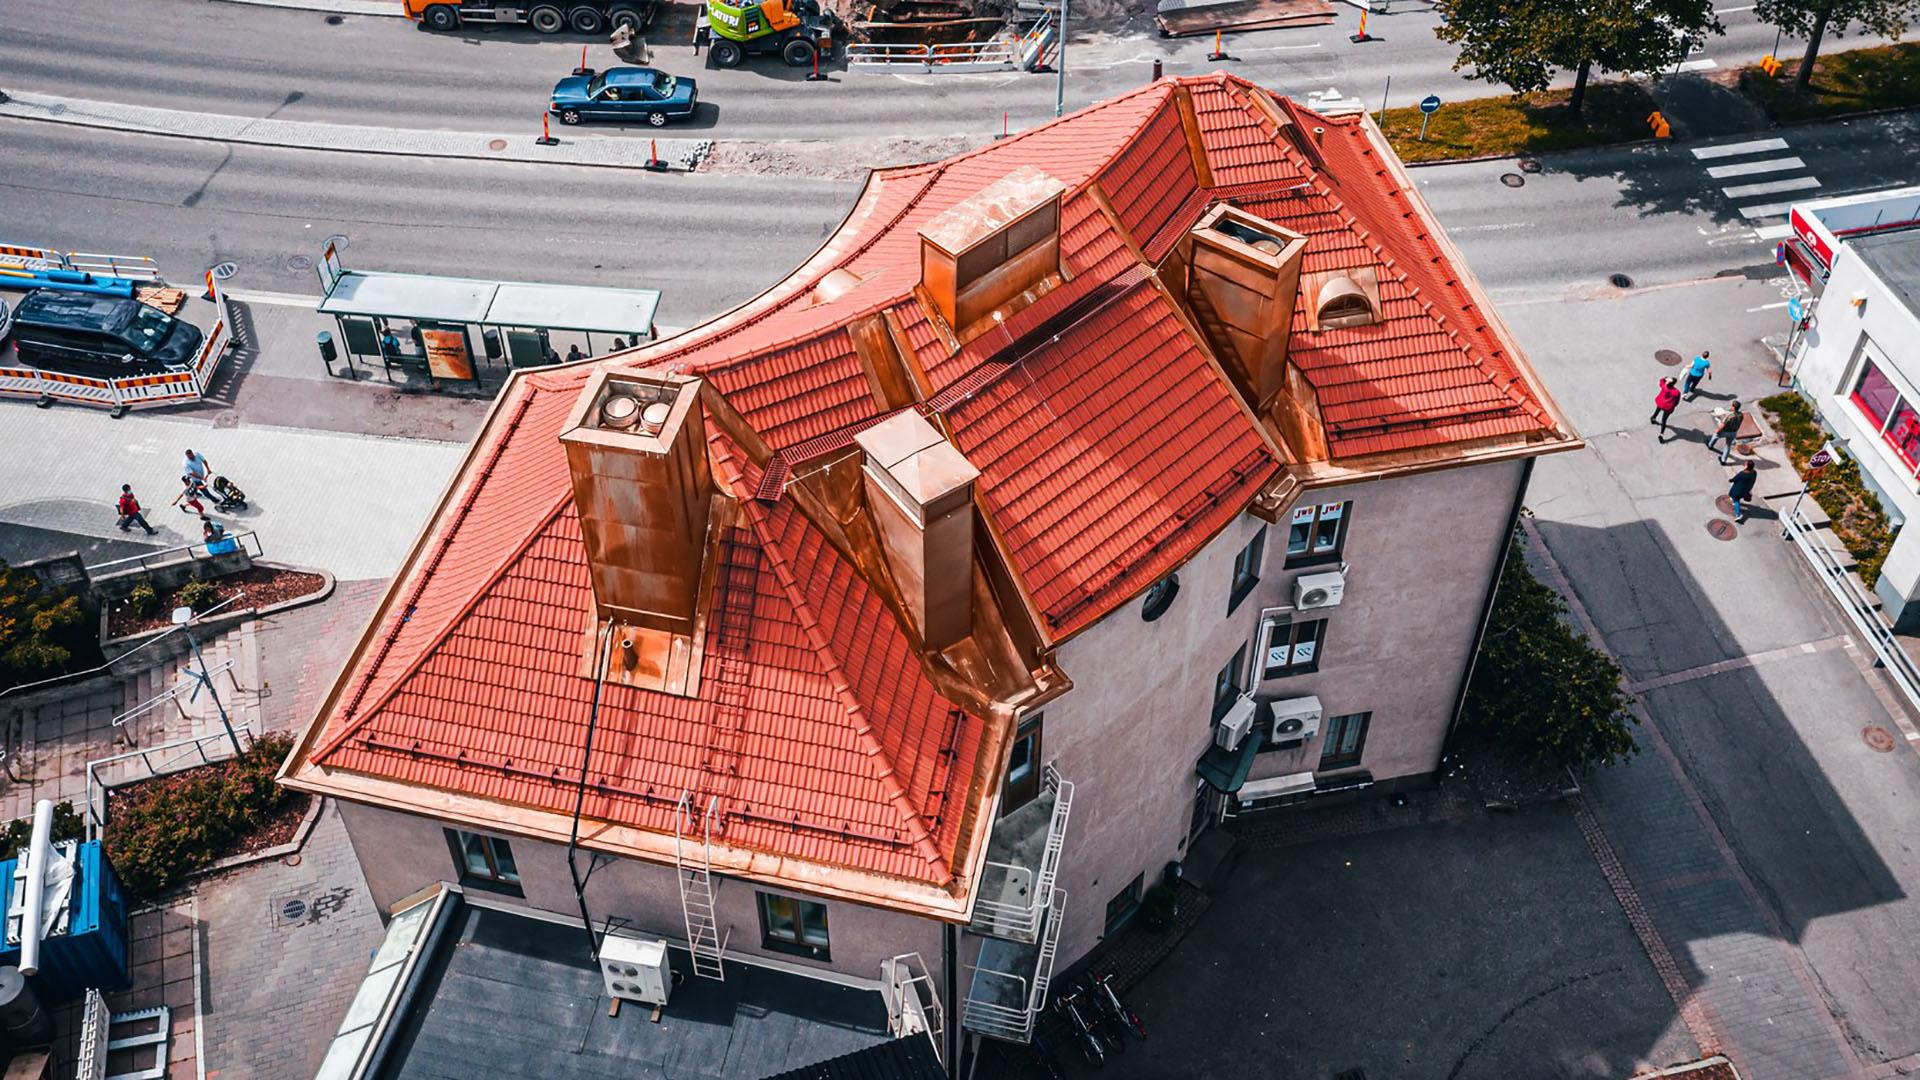 Kattotiilillä pystytään toteuttamaan näyttäviä ja monimuotoisia kattoja. Vuoden 2021 King of Roofs -voiton vei Helsingin Malmilla sijaitseva 1940-luvulla rakennetun liikekerrostalon katto, jonka katemateriaaliksi oli valittu laadukas ja tyylikäs Ormax Granat -savitiili.